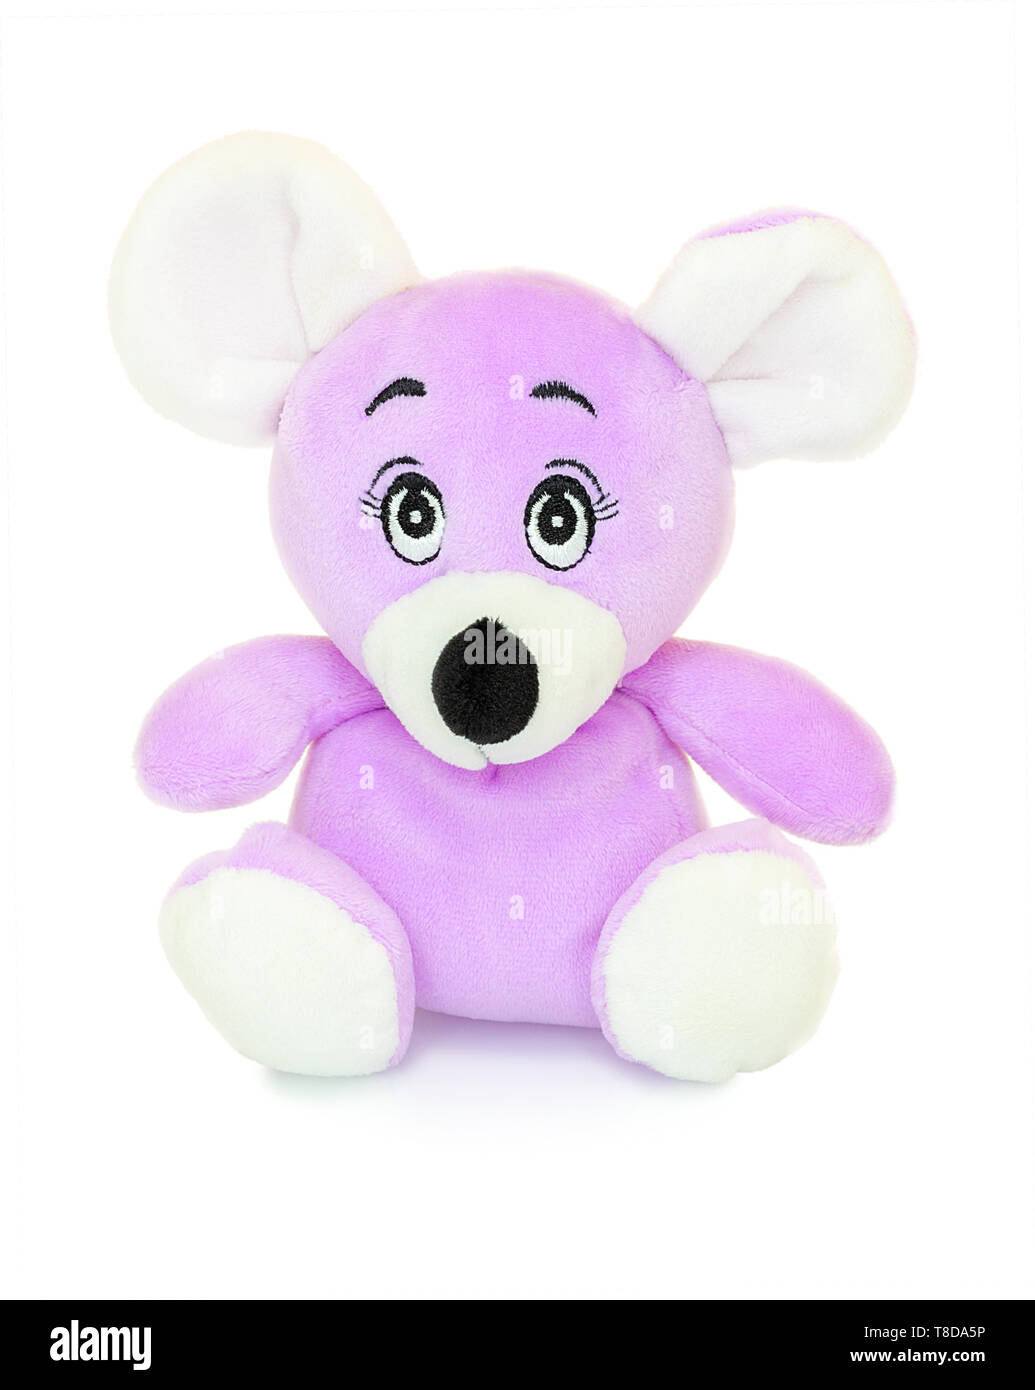 Maus Plüschtier Puppe auf weißem Hintergrund mit Schatten Reflexion isoliert. Maus Plüsch gefüllte Puppe auf weißem Hintergrund. Farbige gefüllte Maus Spielzeug. Purpl Stockfoto